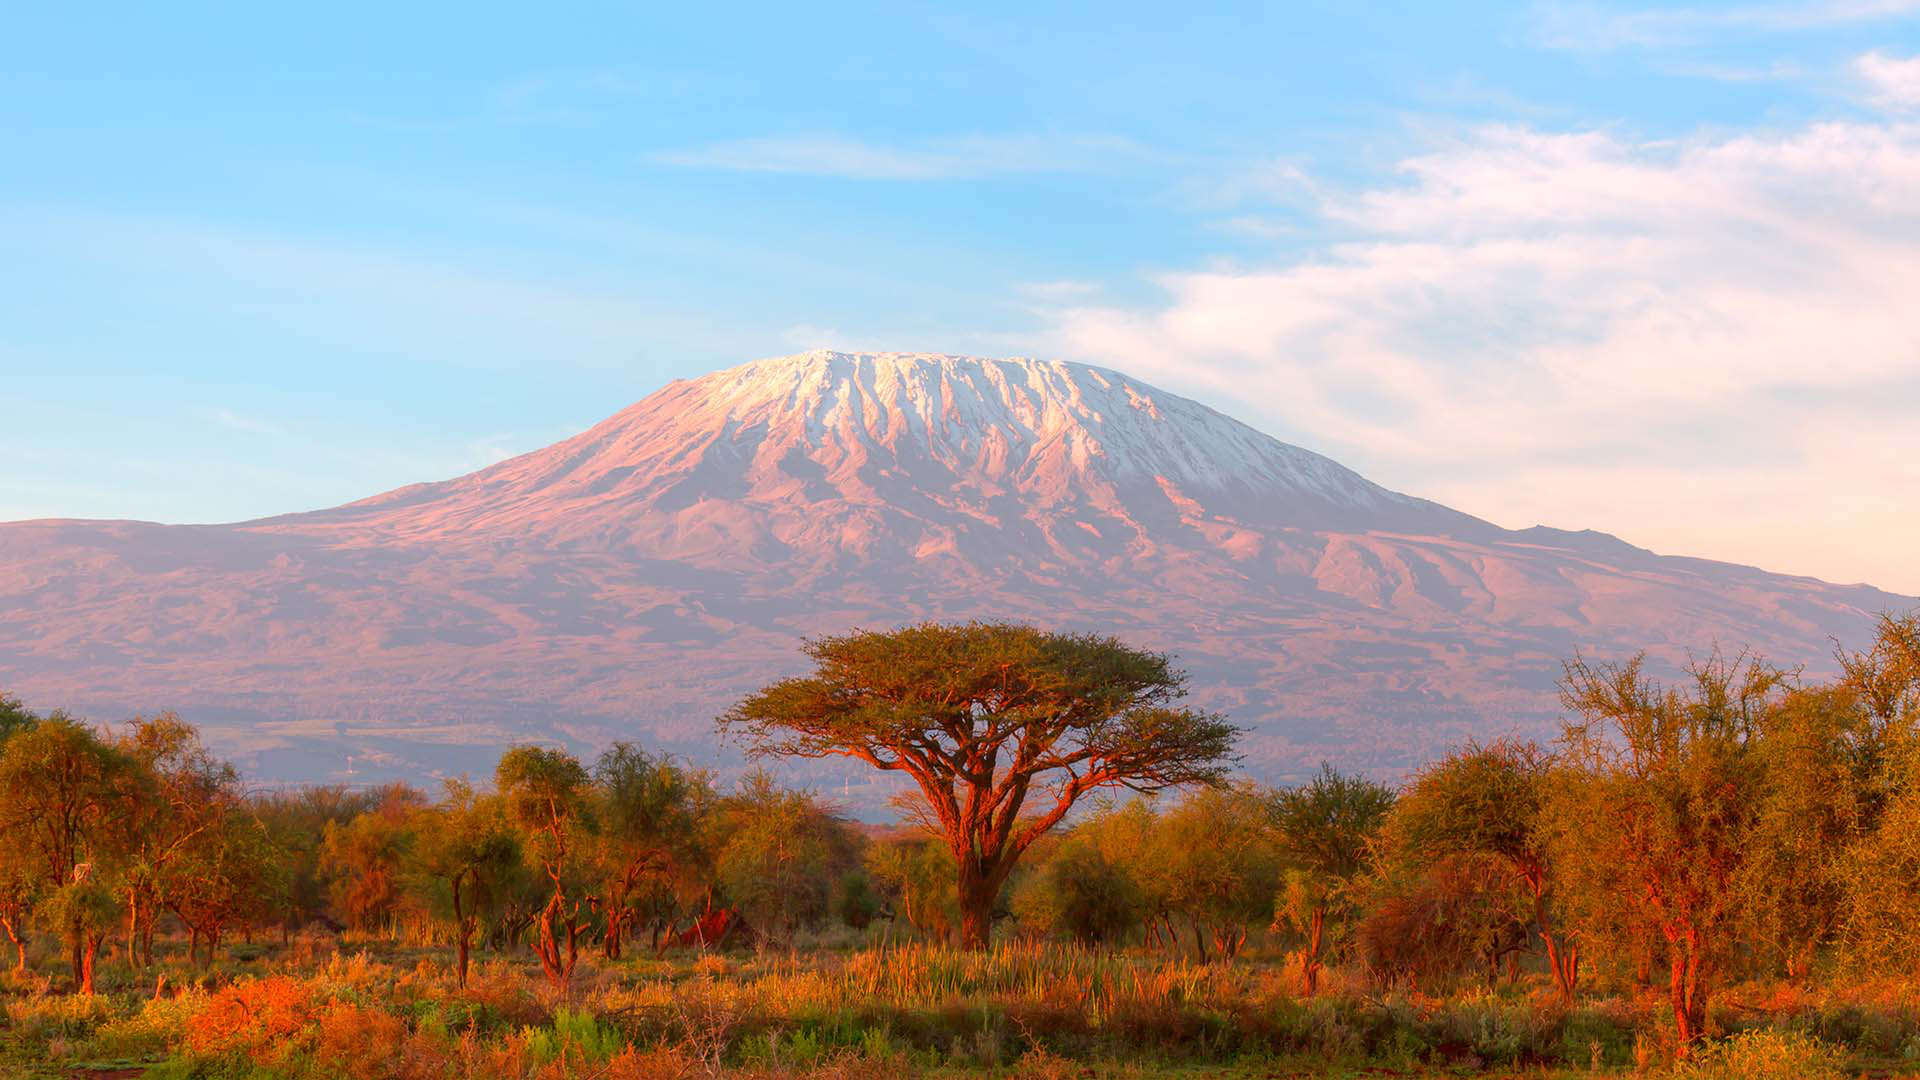 Vista del monte Kilimanjaro, en Tanzania